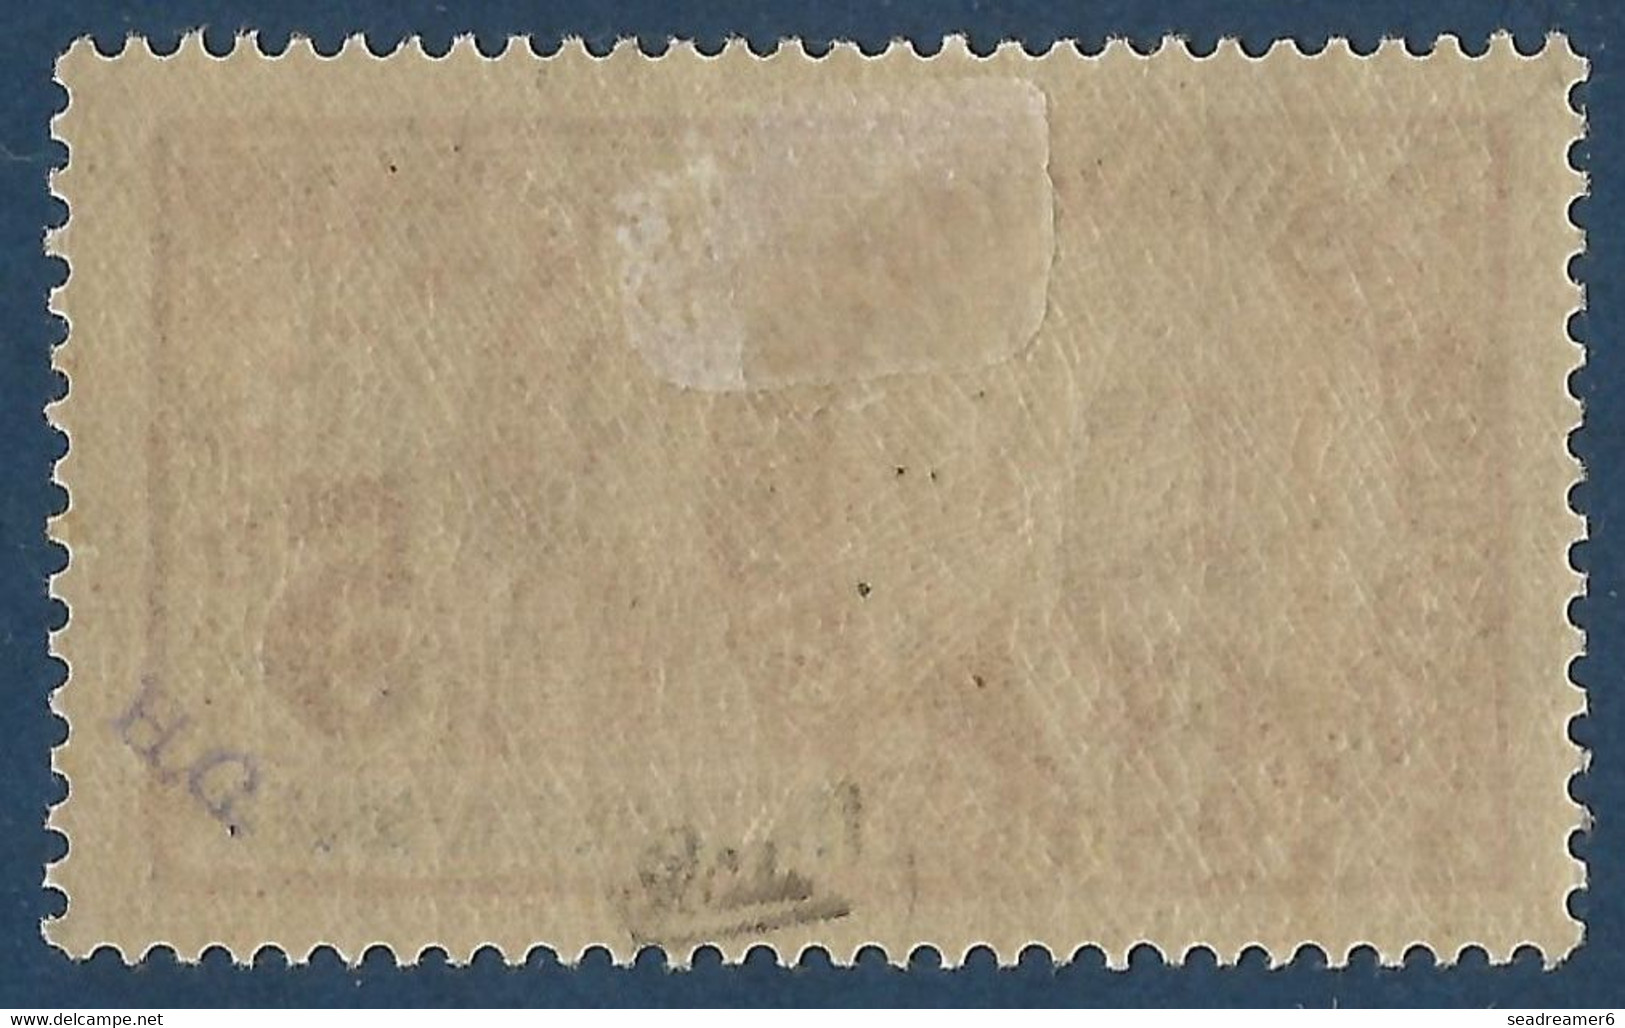 France Colonies Haut Senegal & Niger N°17* 5fr De La Serie Palmiers Tres Frais Signé Calves - Unused Stamps